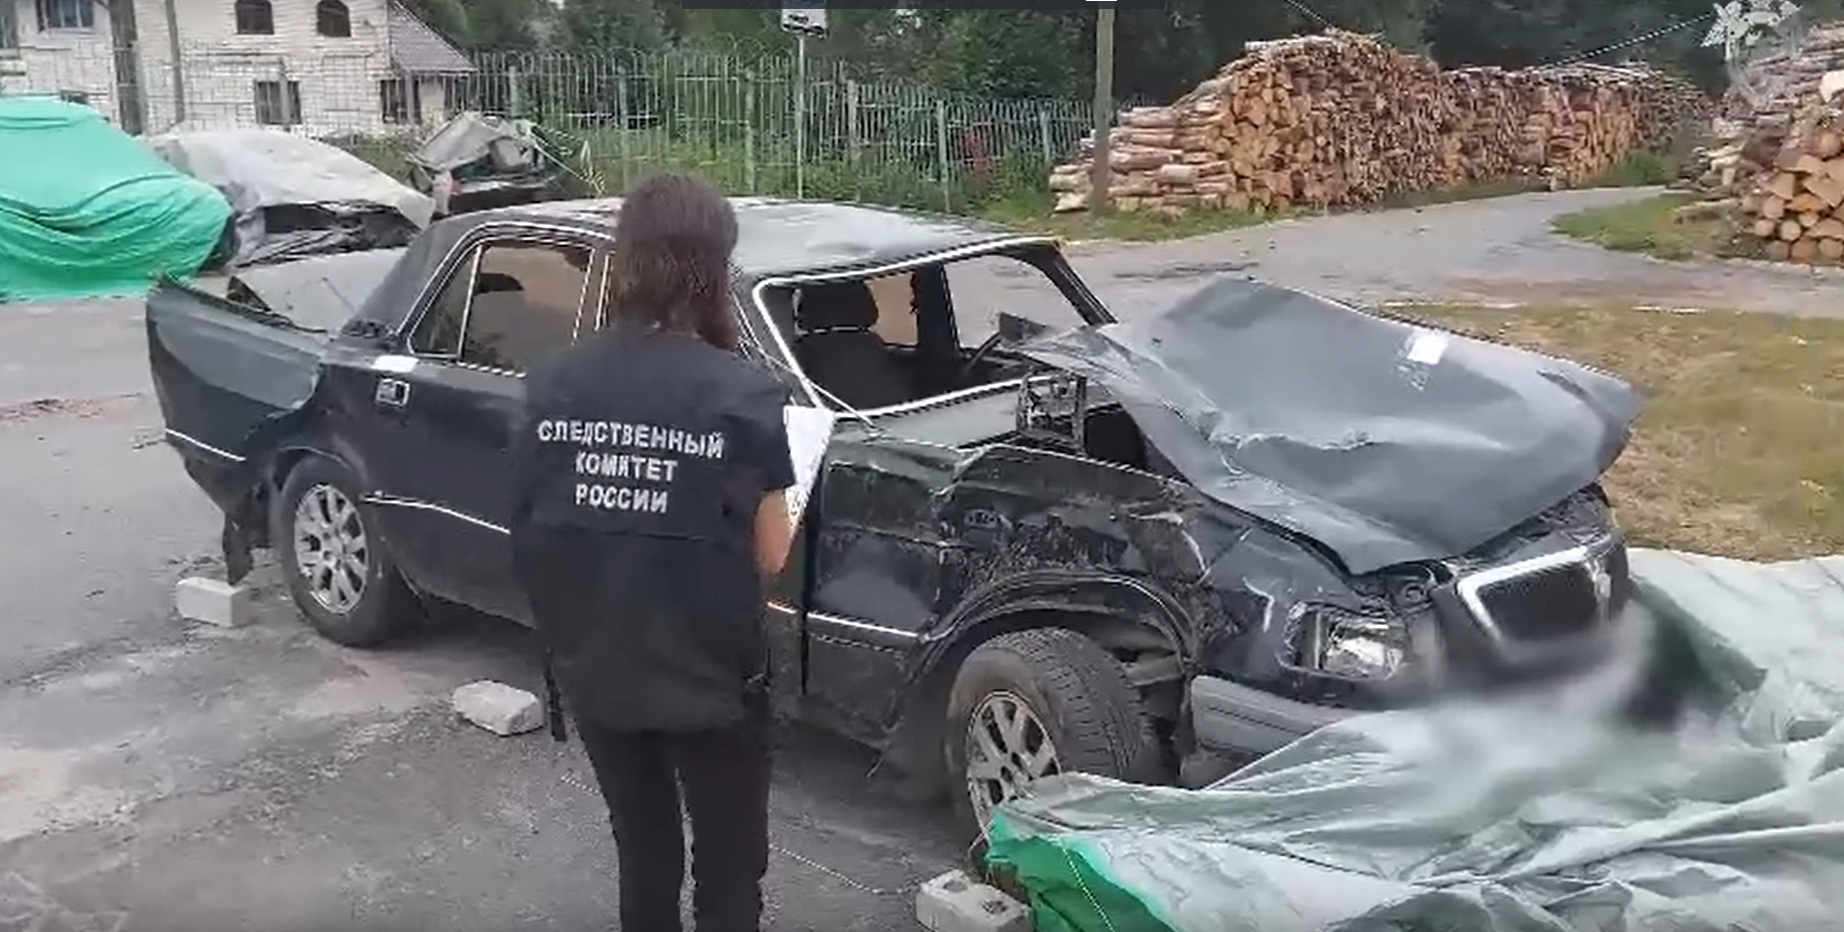 Двое пьяных подростков в Пудоже, угнав автомобиль, попали в аварию 